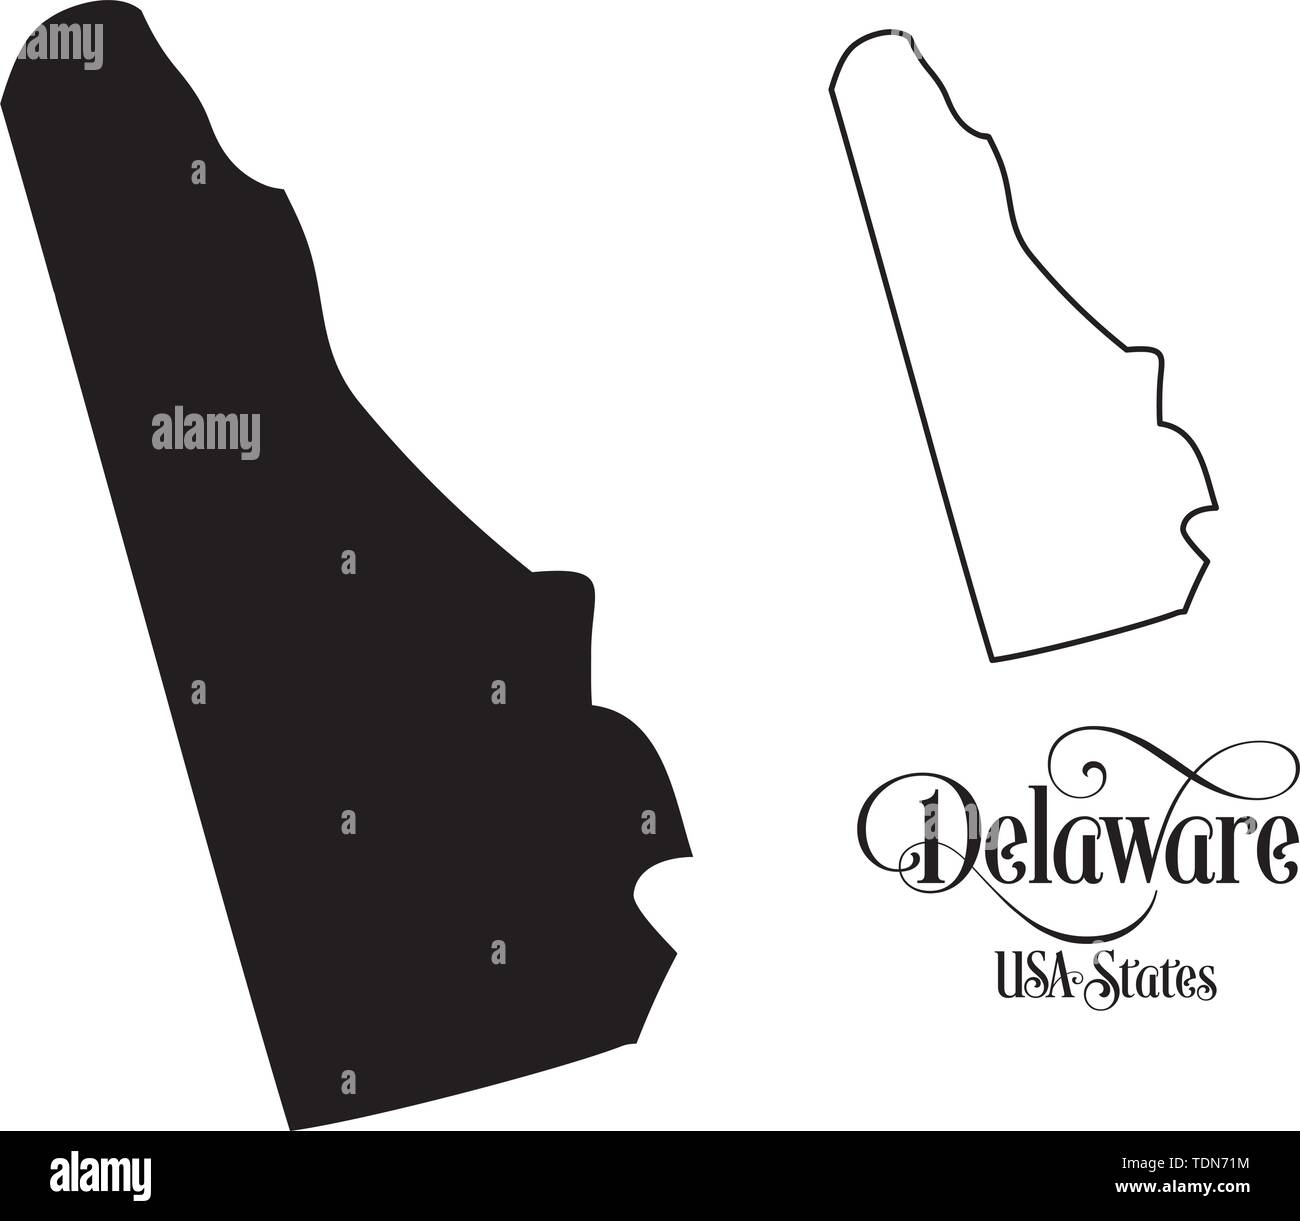 Karte der Vereinigten Staaten von Amerika (USA) Zustand von Delaware - Abbildung auf weißem Hintergrund. Stock Vektor